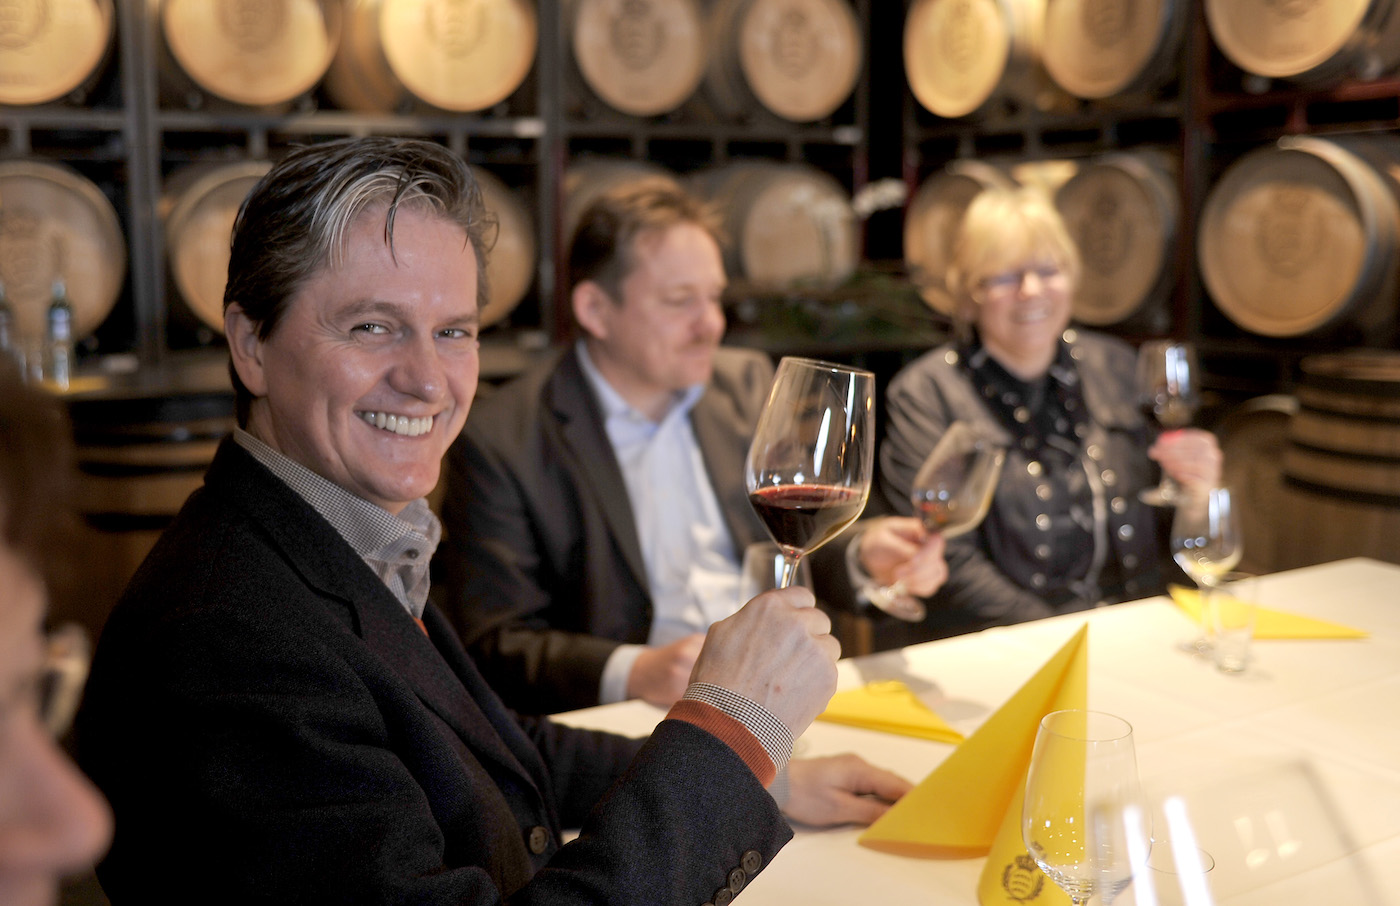 Drei mittelalte Personen sitzen um einen fein mit Servietten eingedeckten Tisch und verkosten Rotwein, im Hintergrund zahlreiche Weinfässer aus Holz.